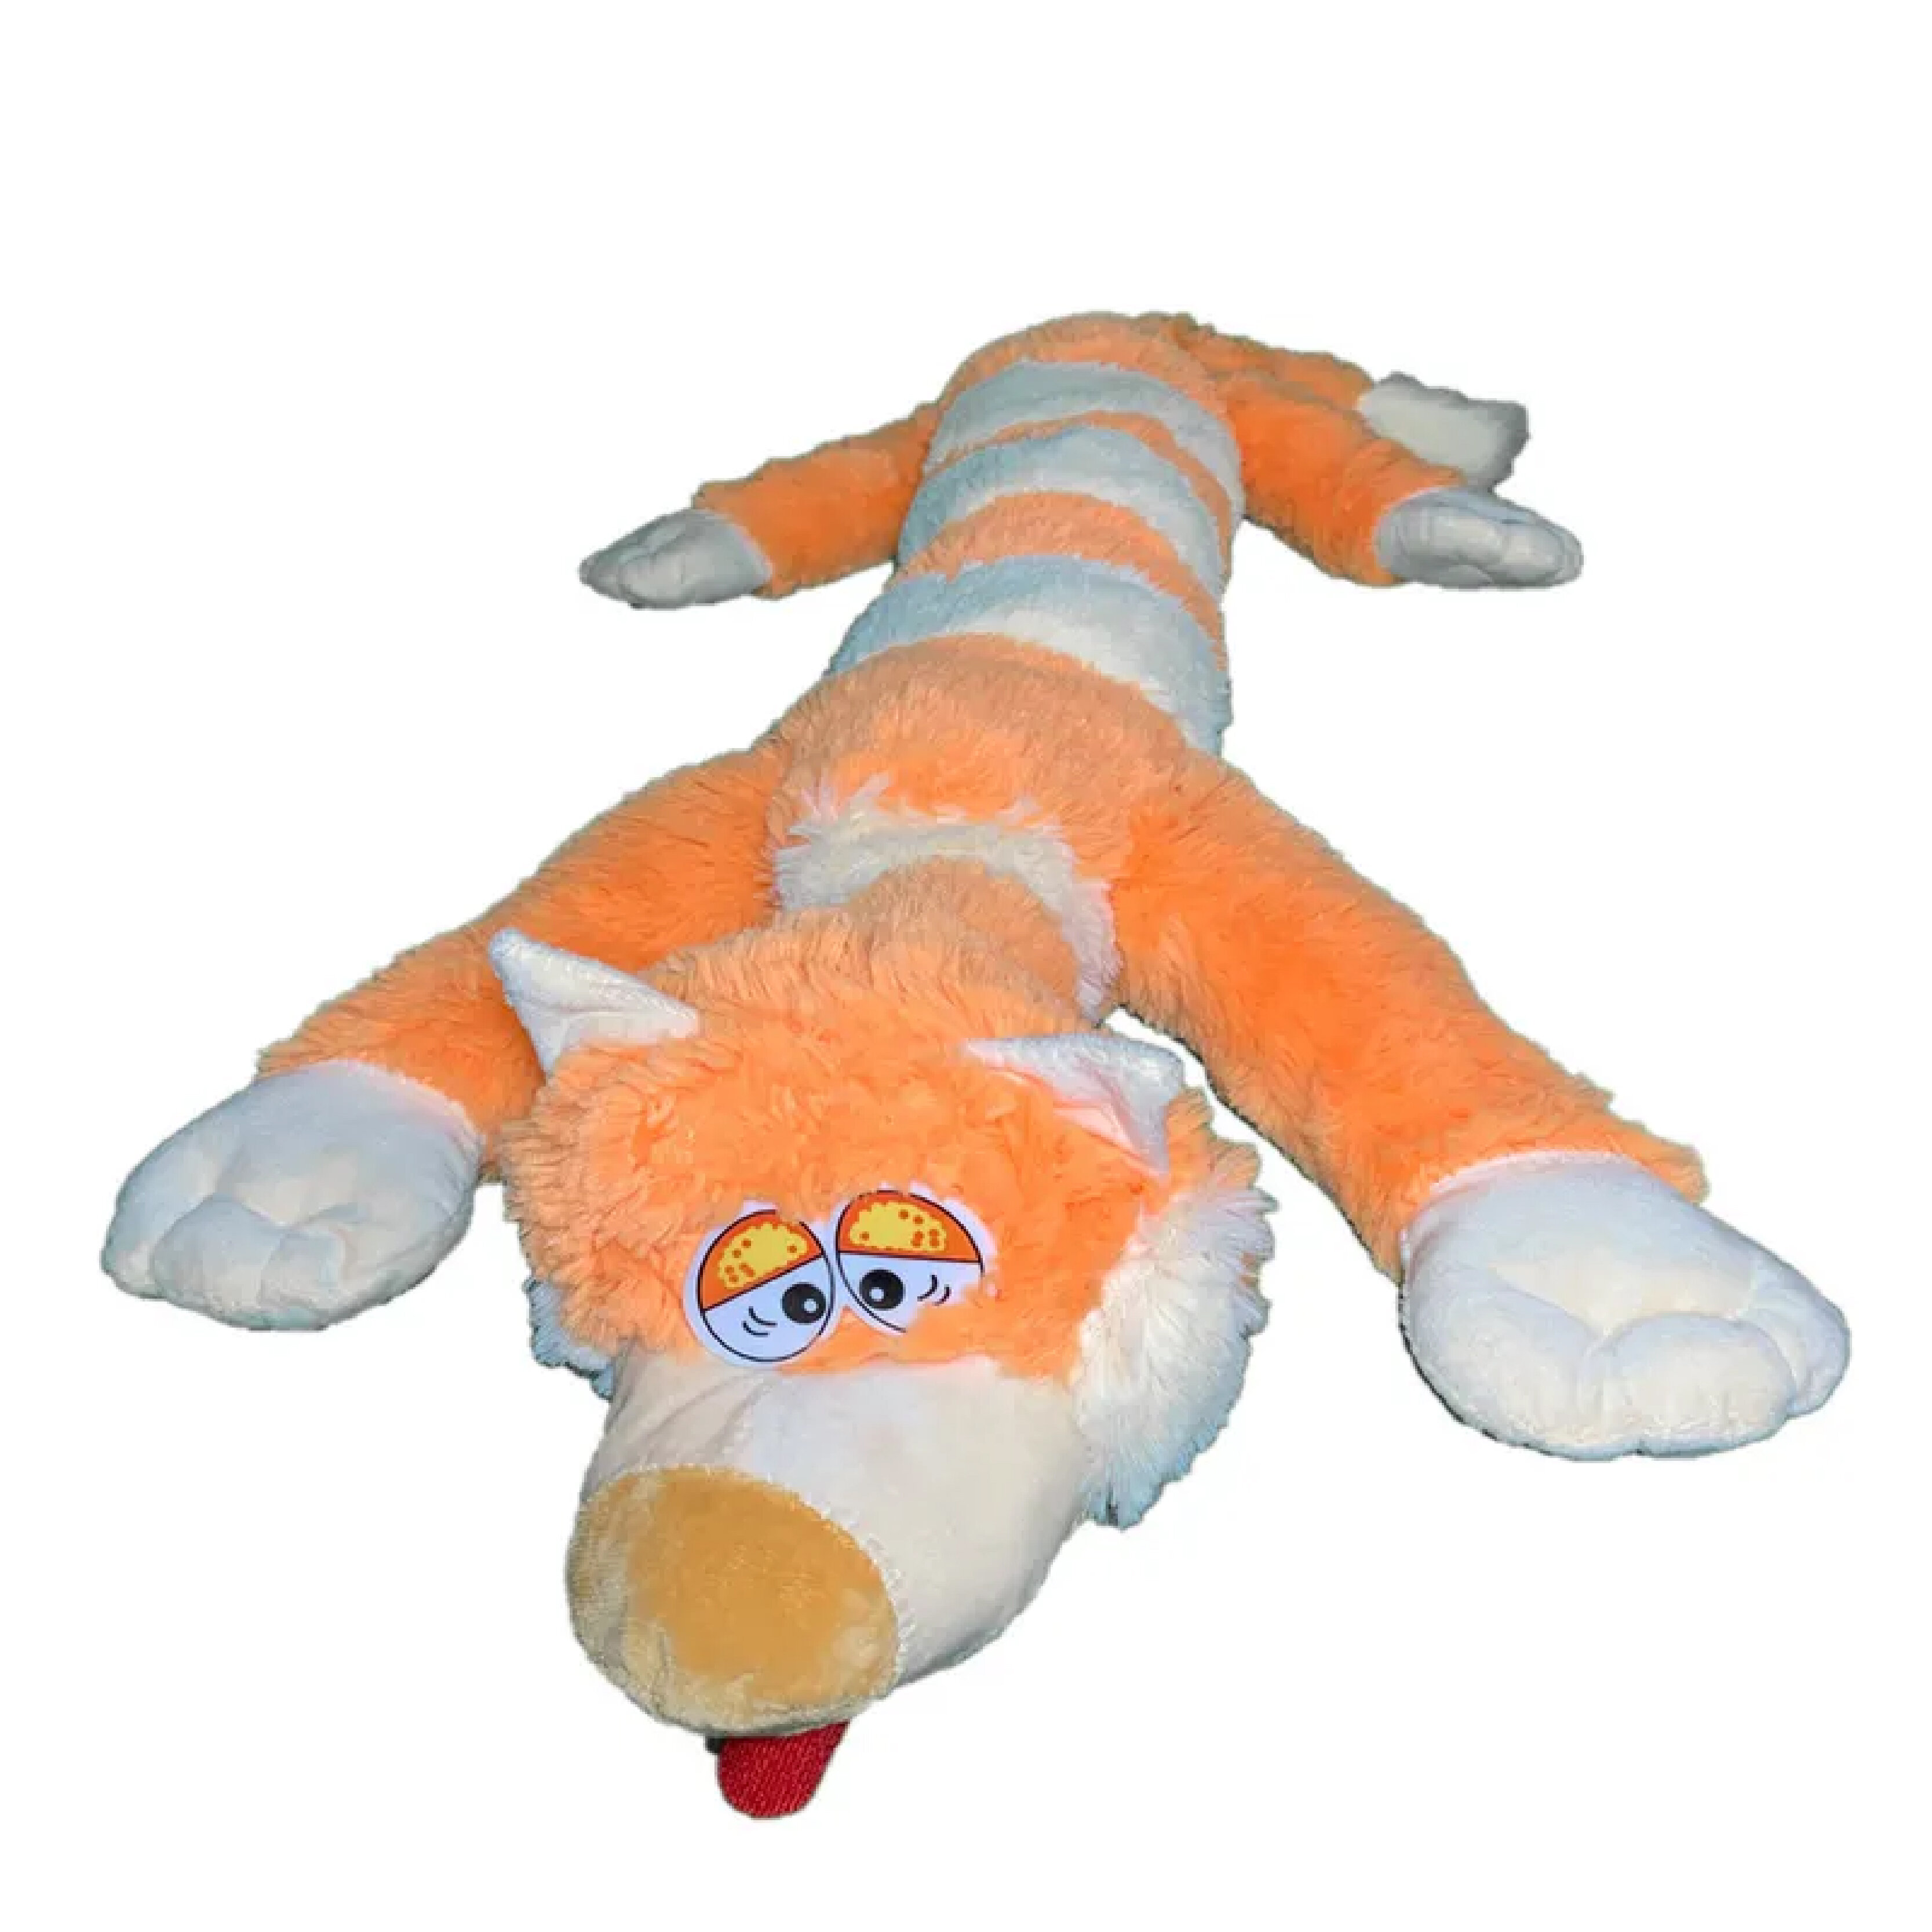 Мягкая игрушка La-LaLand Кот багет, оранжевый, 90 см мягкая игрушка sun toys кот багет желтый 90 см